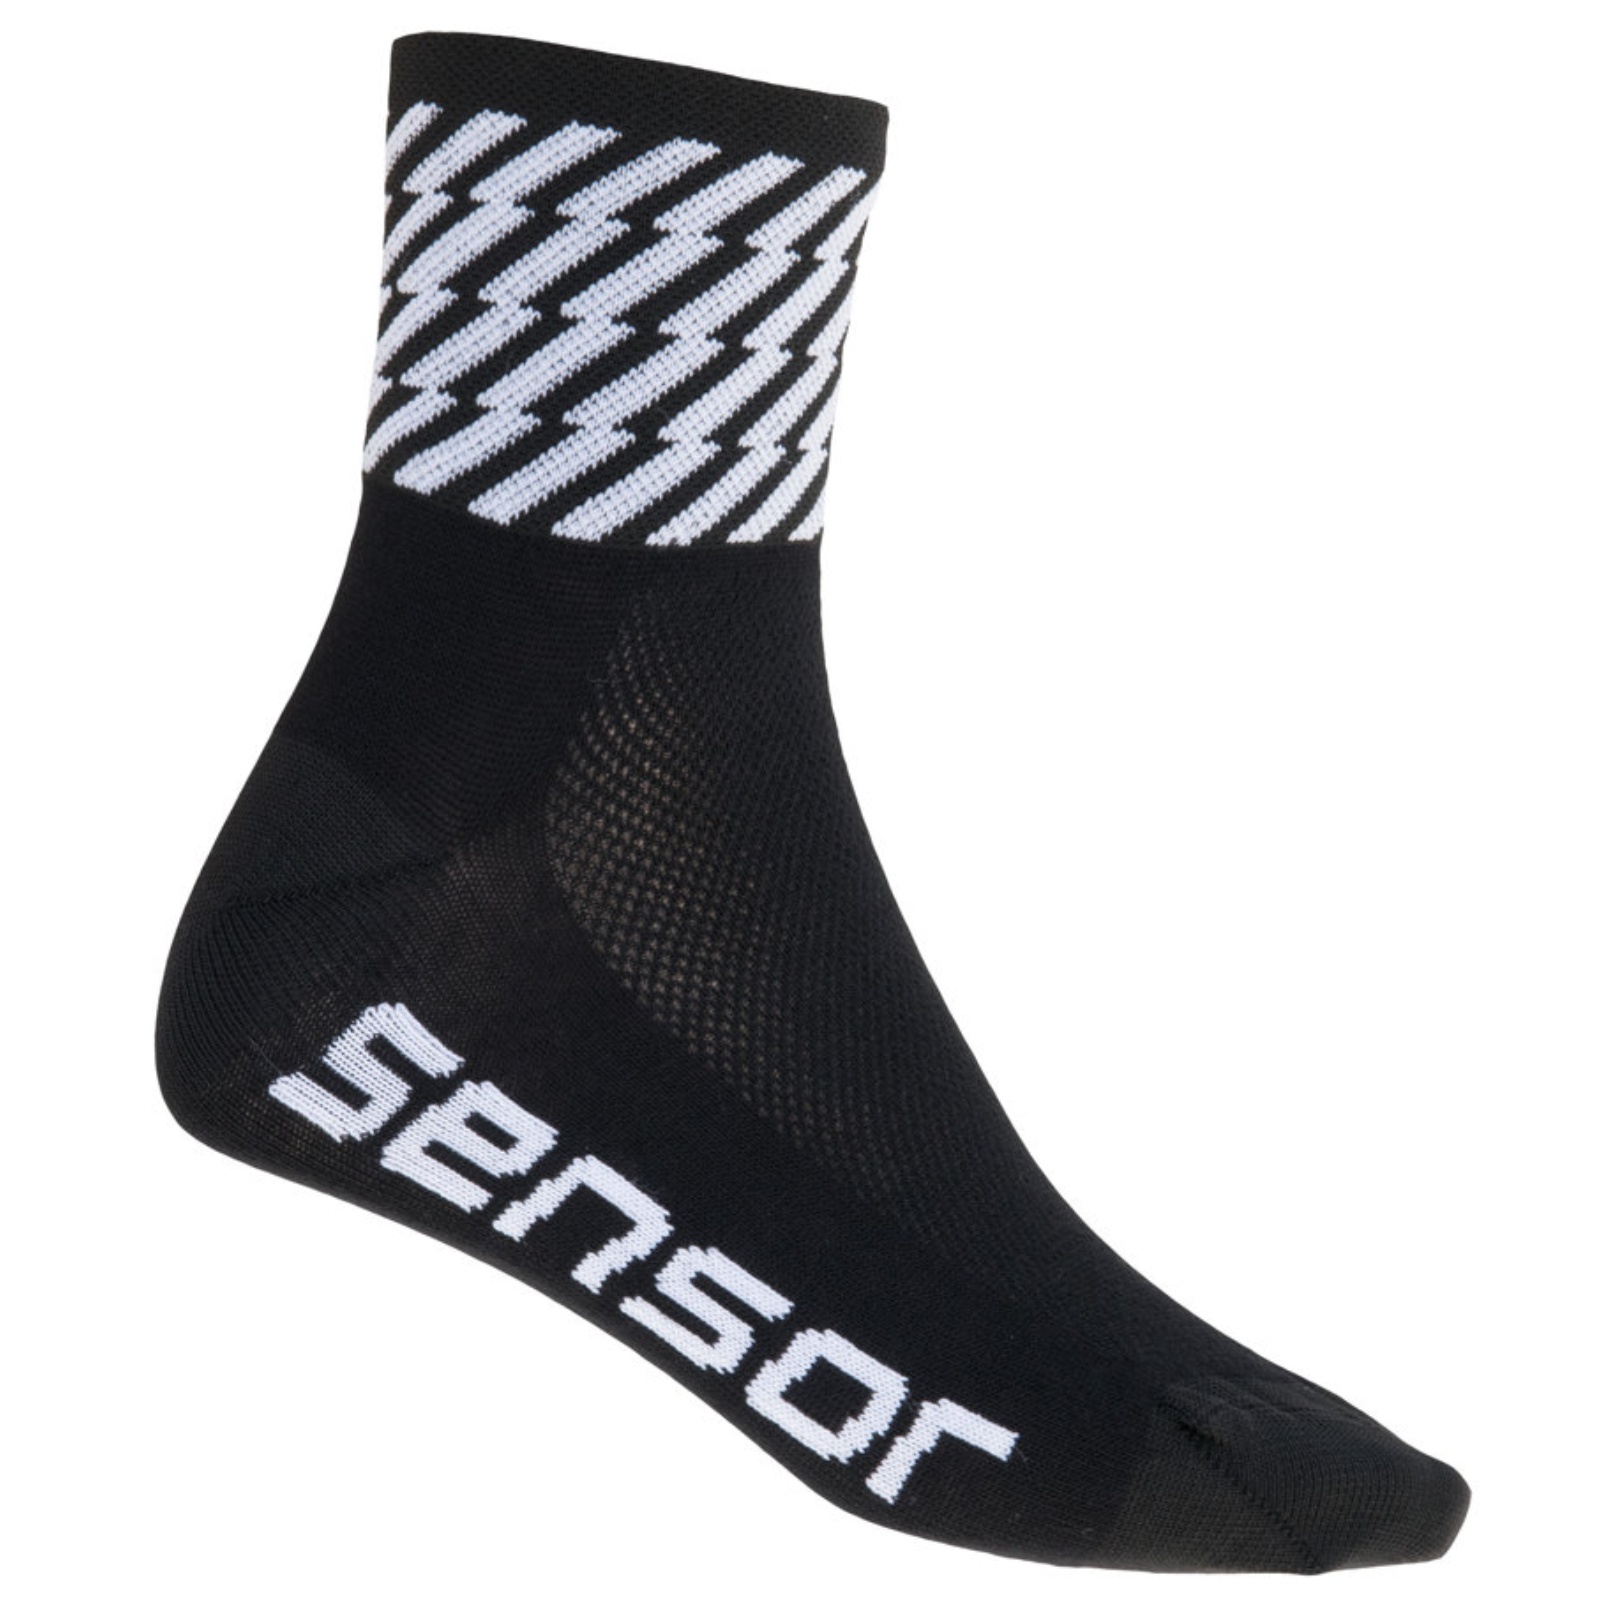 Sensor ponožky RACE FLASH černá - 9-11